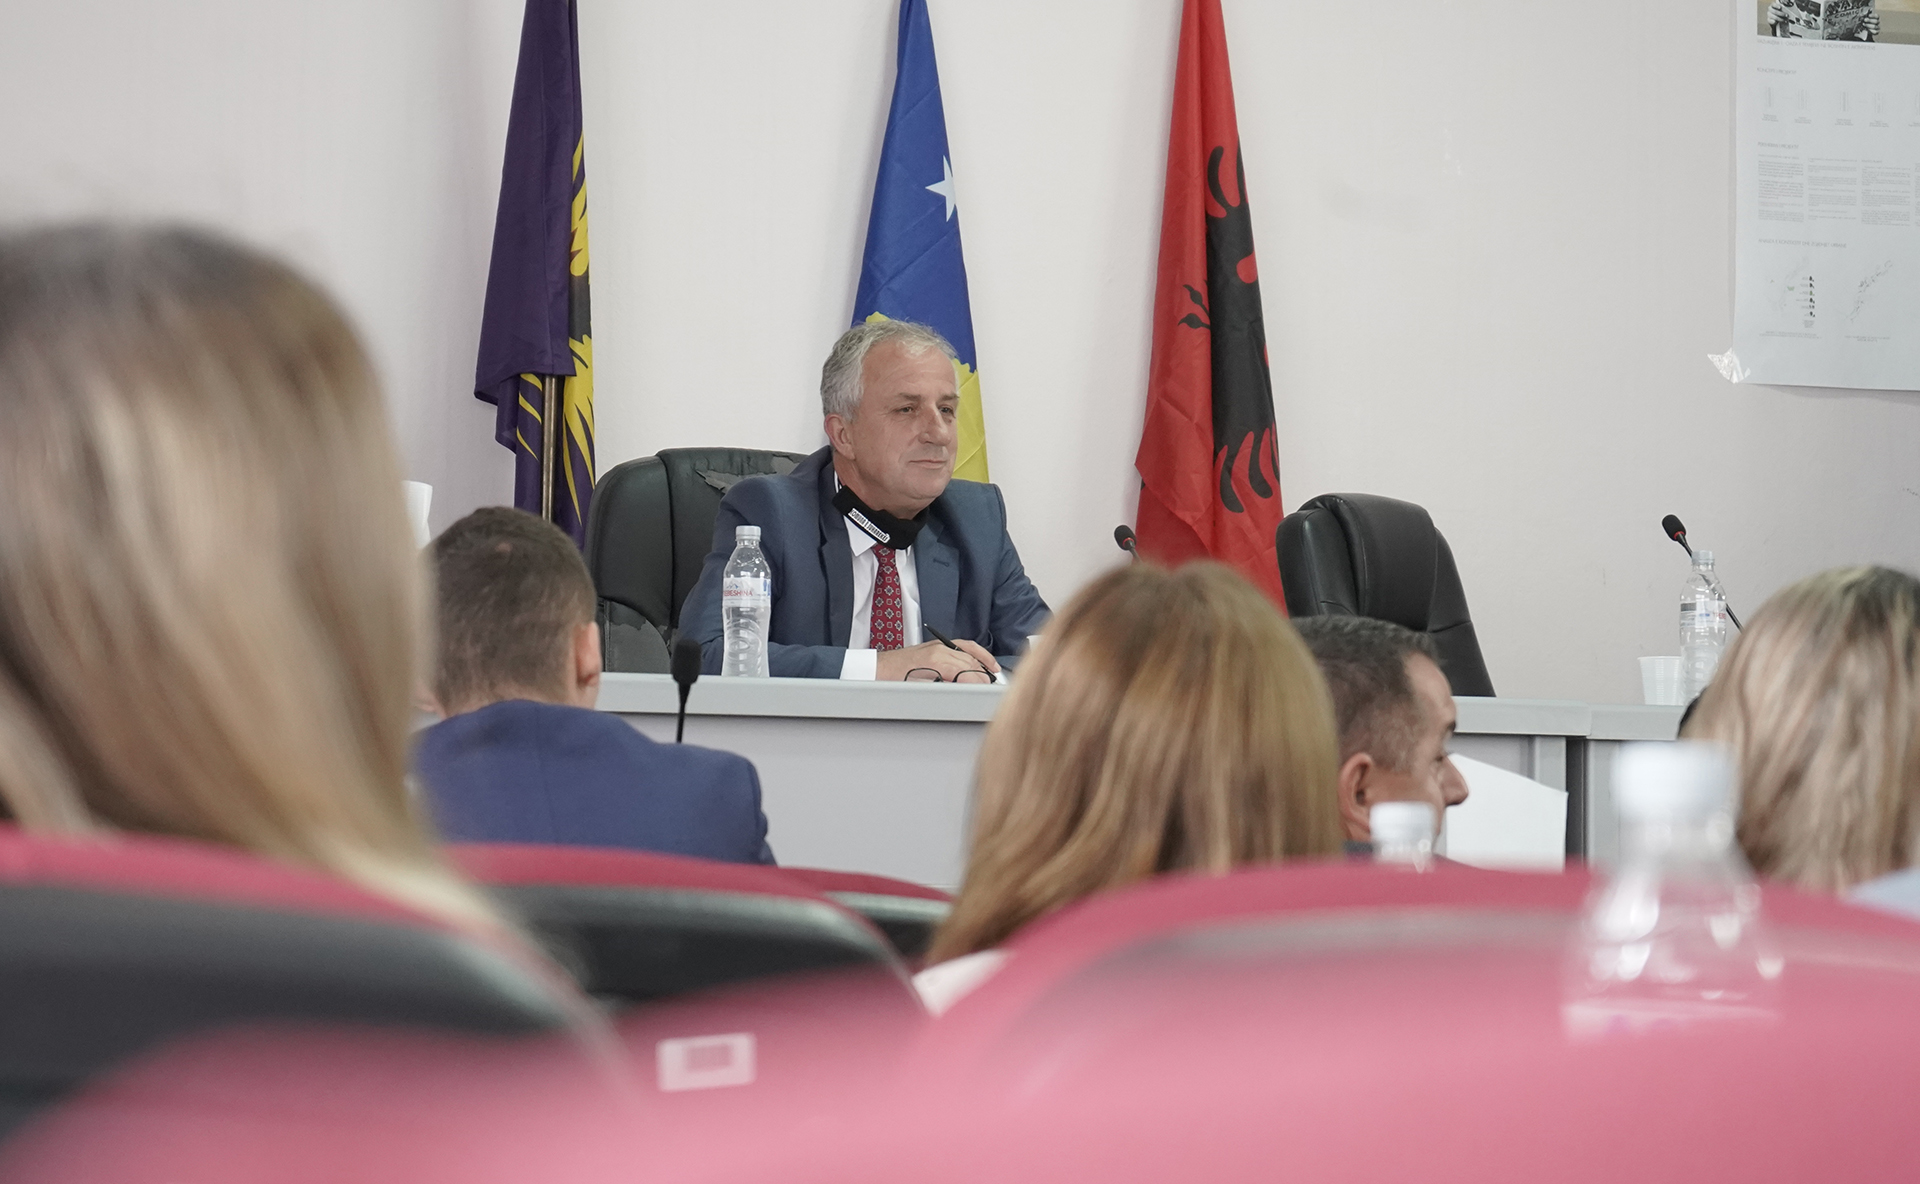 [EKSKLUZIVE] – Përformanca e komunave, Suhareka me 36.29% renditet e 17-ta në Kosovë për përfaqësim gjinor